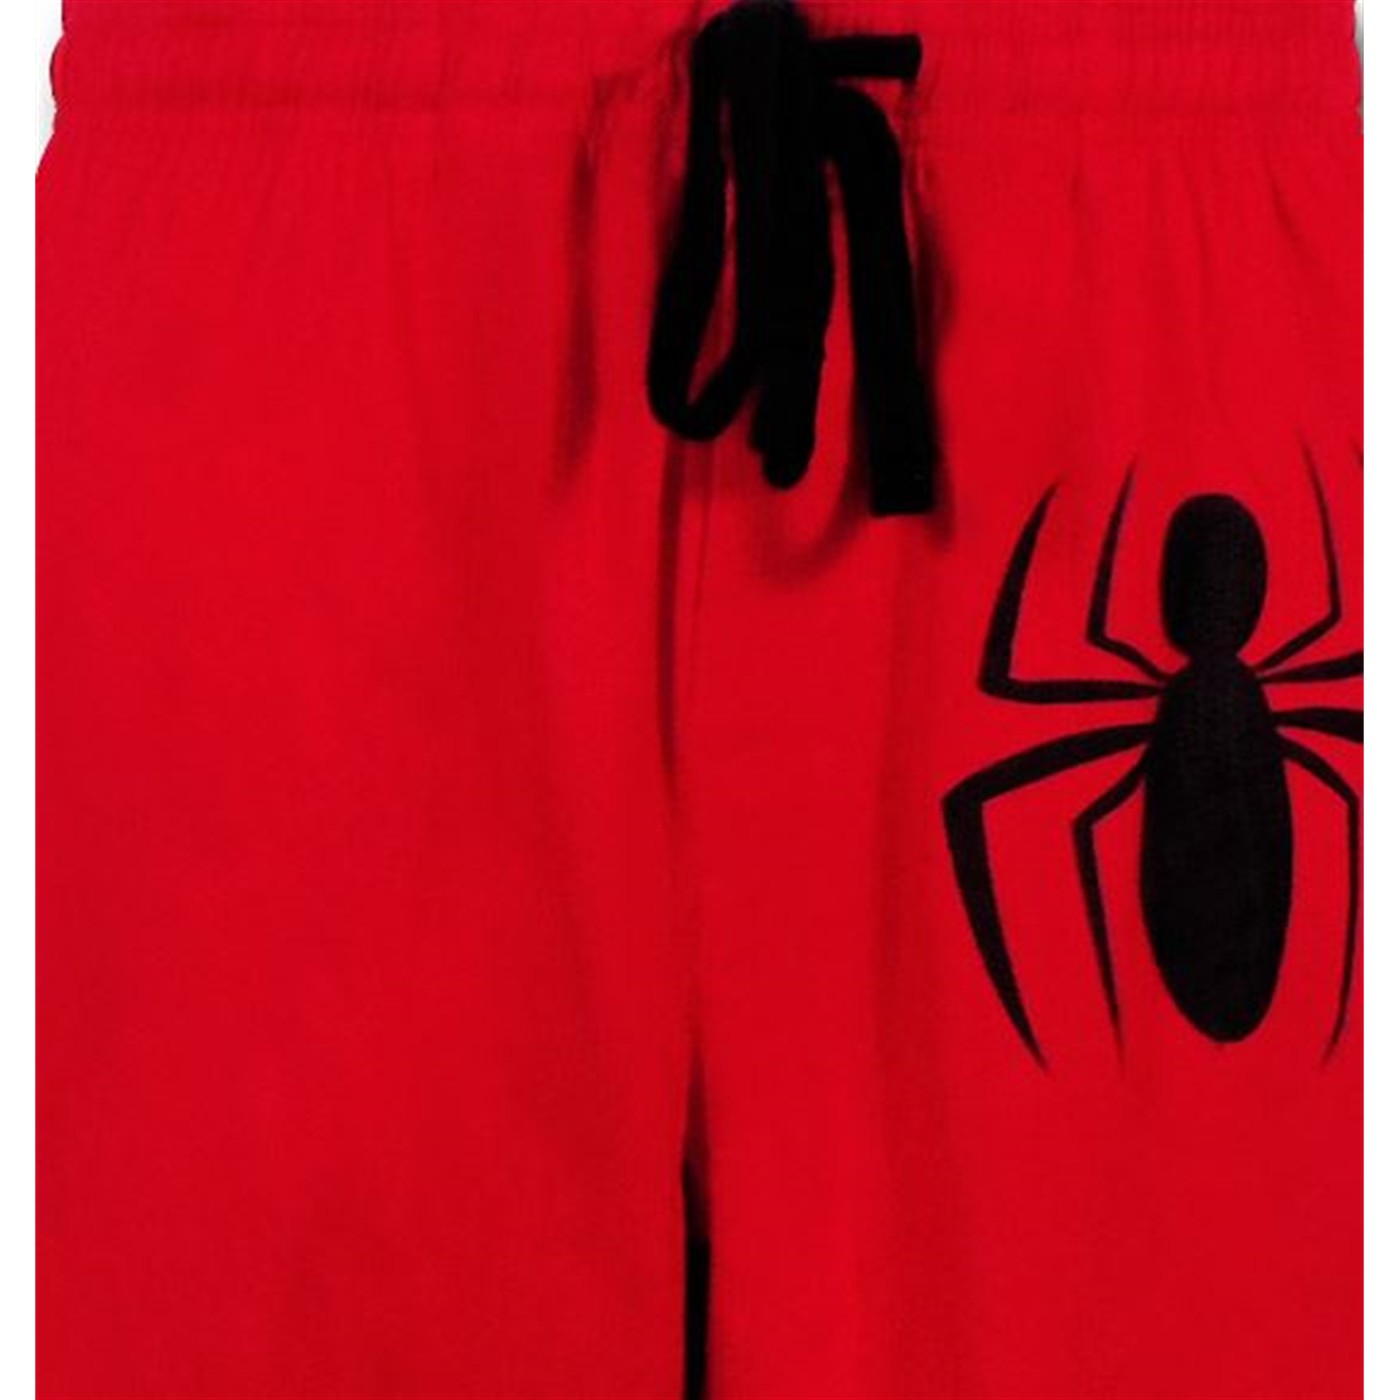 Spiderman Symbol on Red Sleep Pants